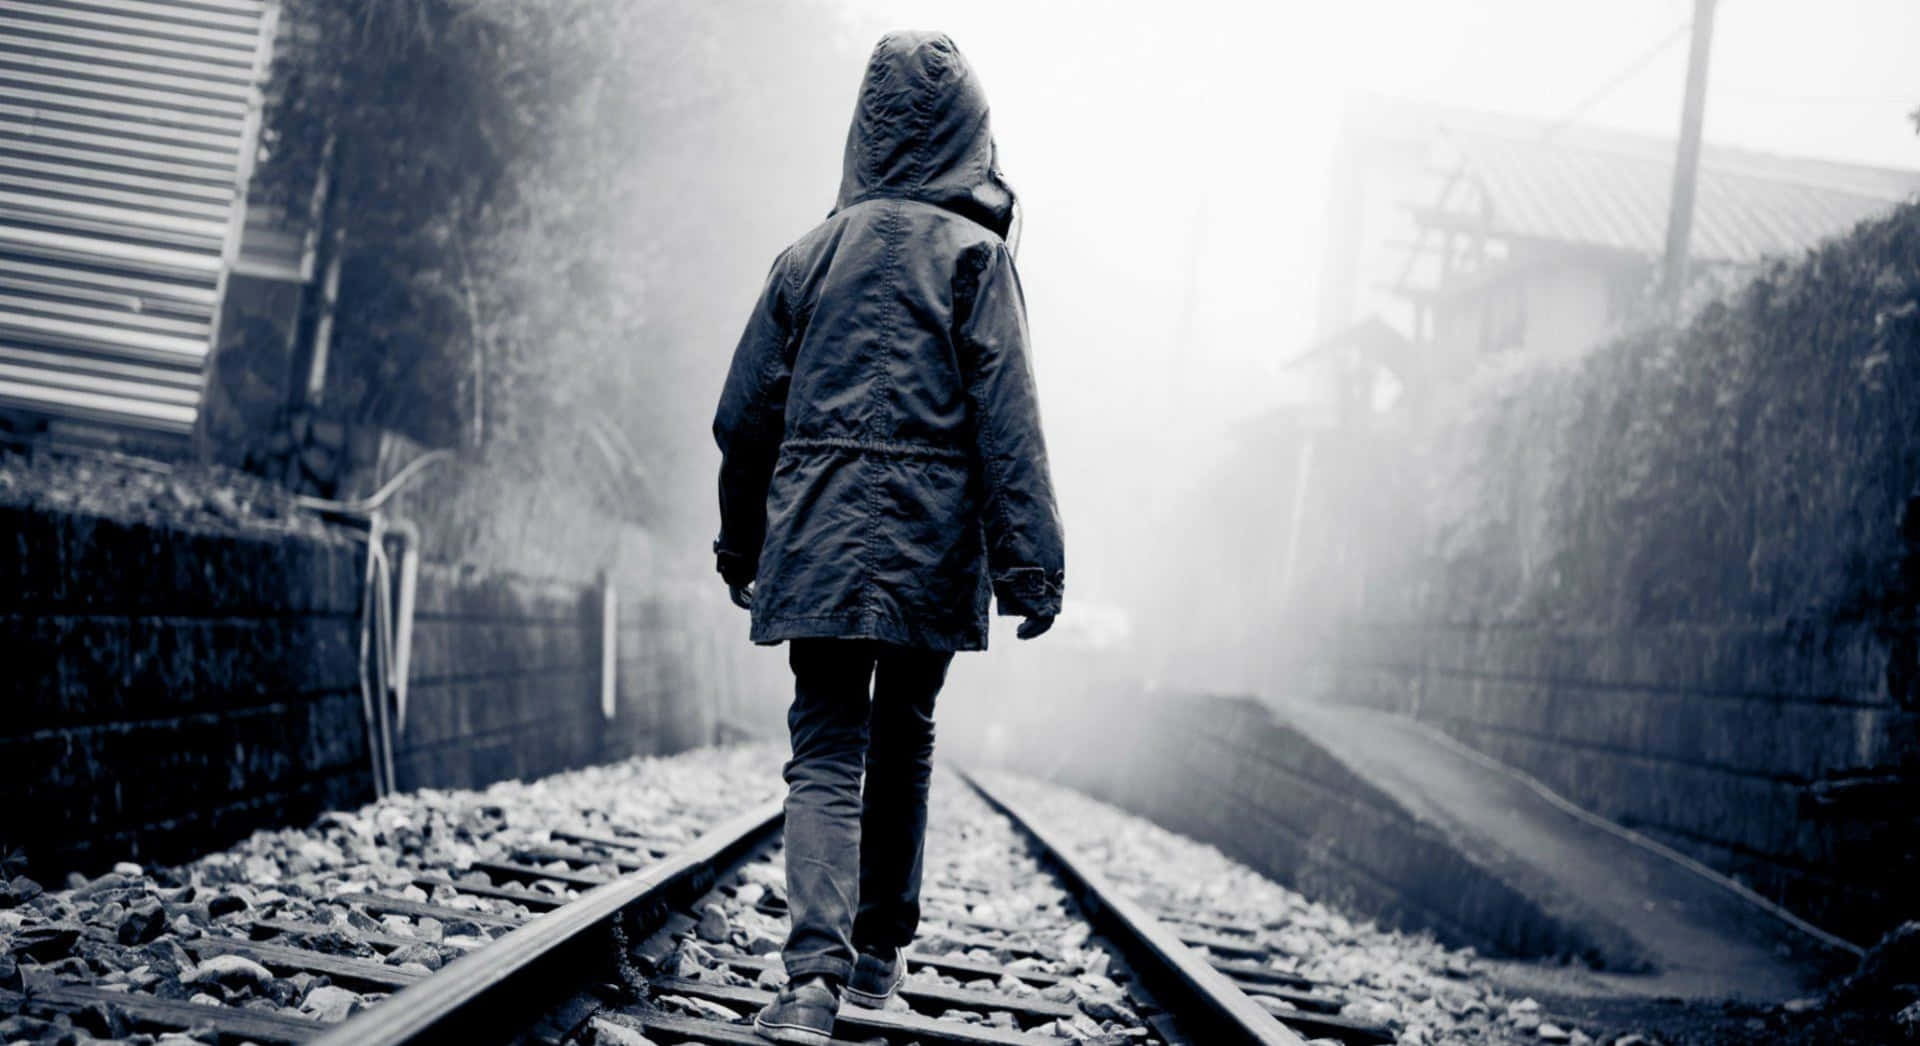 Imagende Un Niño Triste Y Solo Caminando En Las Vías Del Tren.